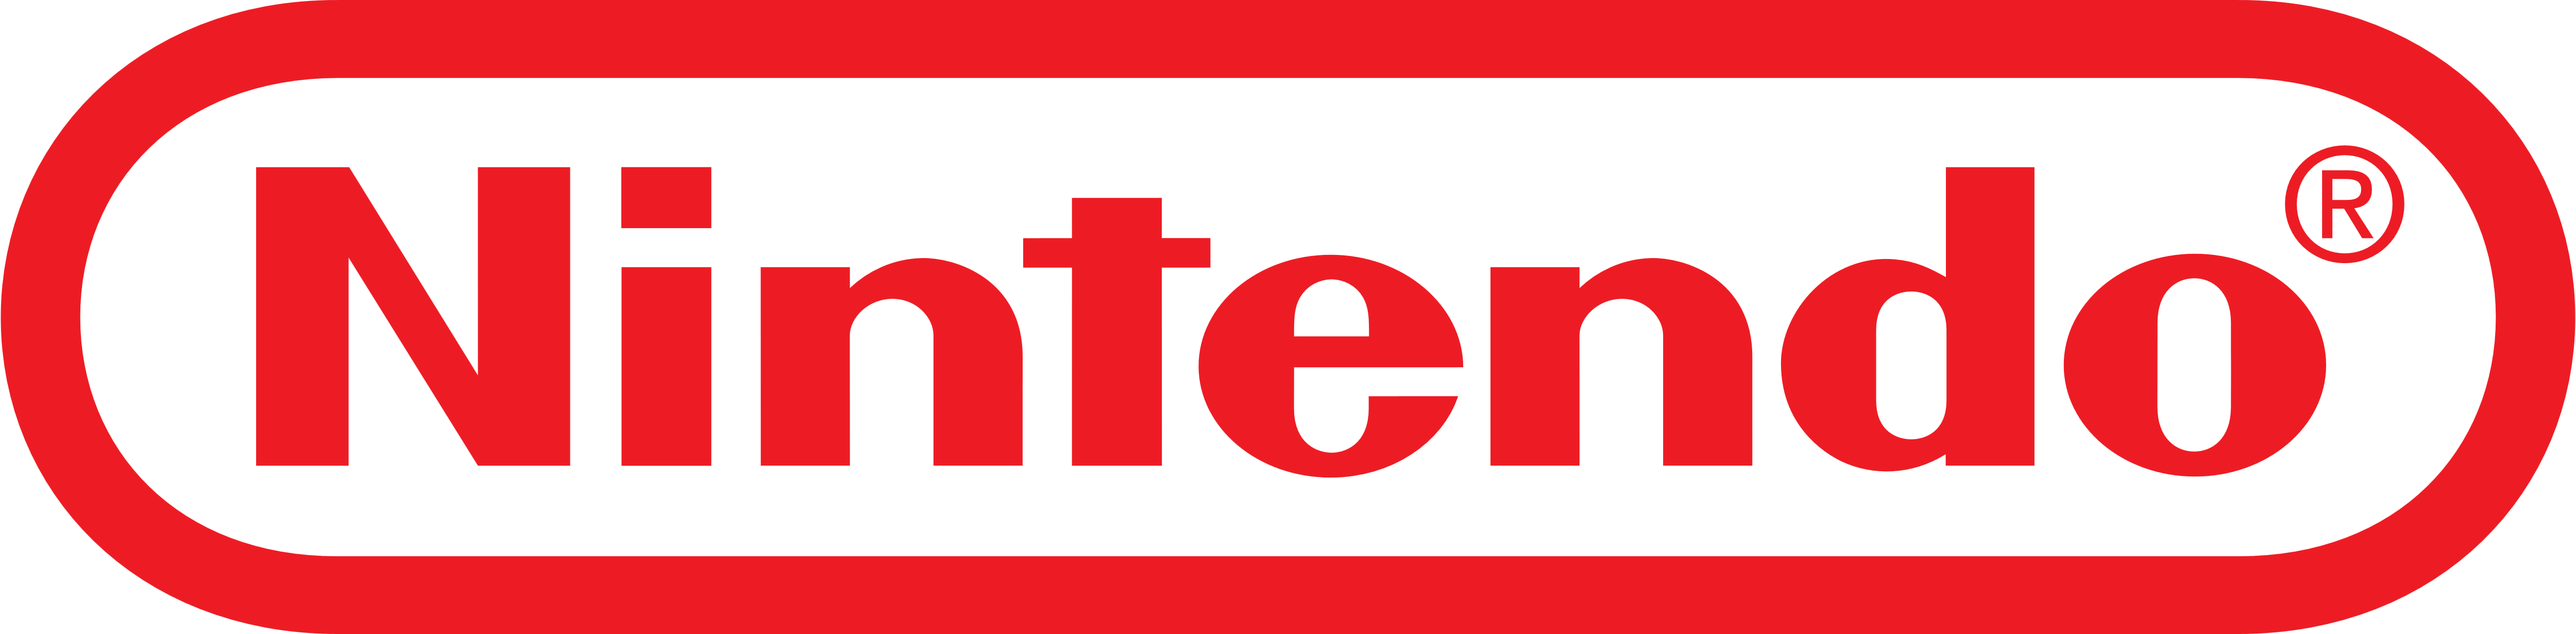 Nintendo_logo_red.png